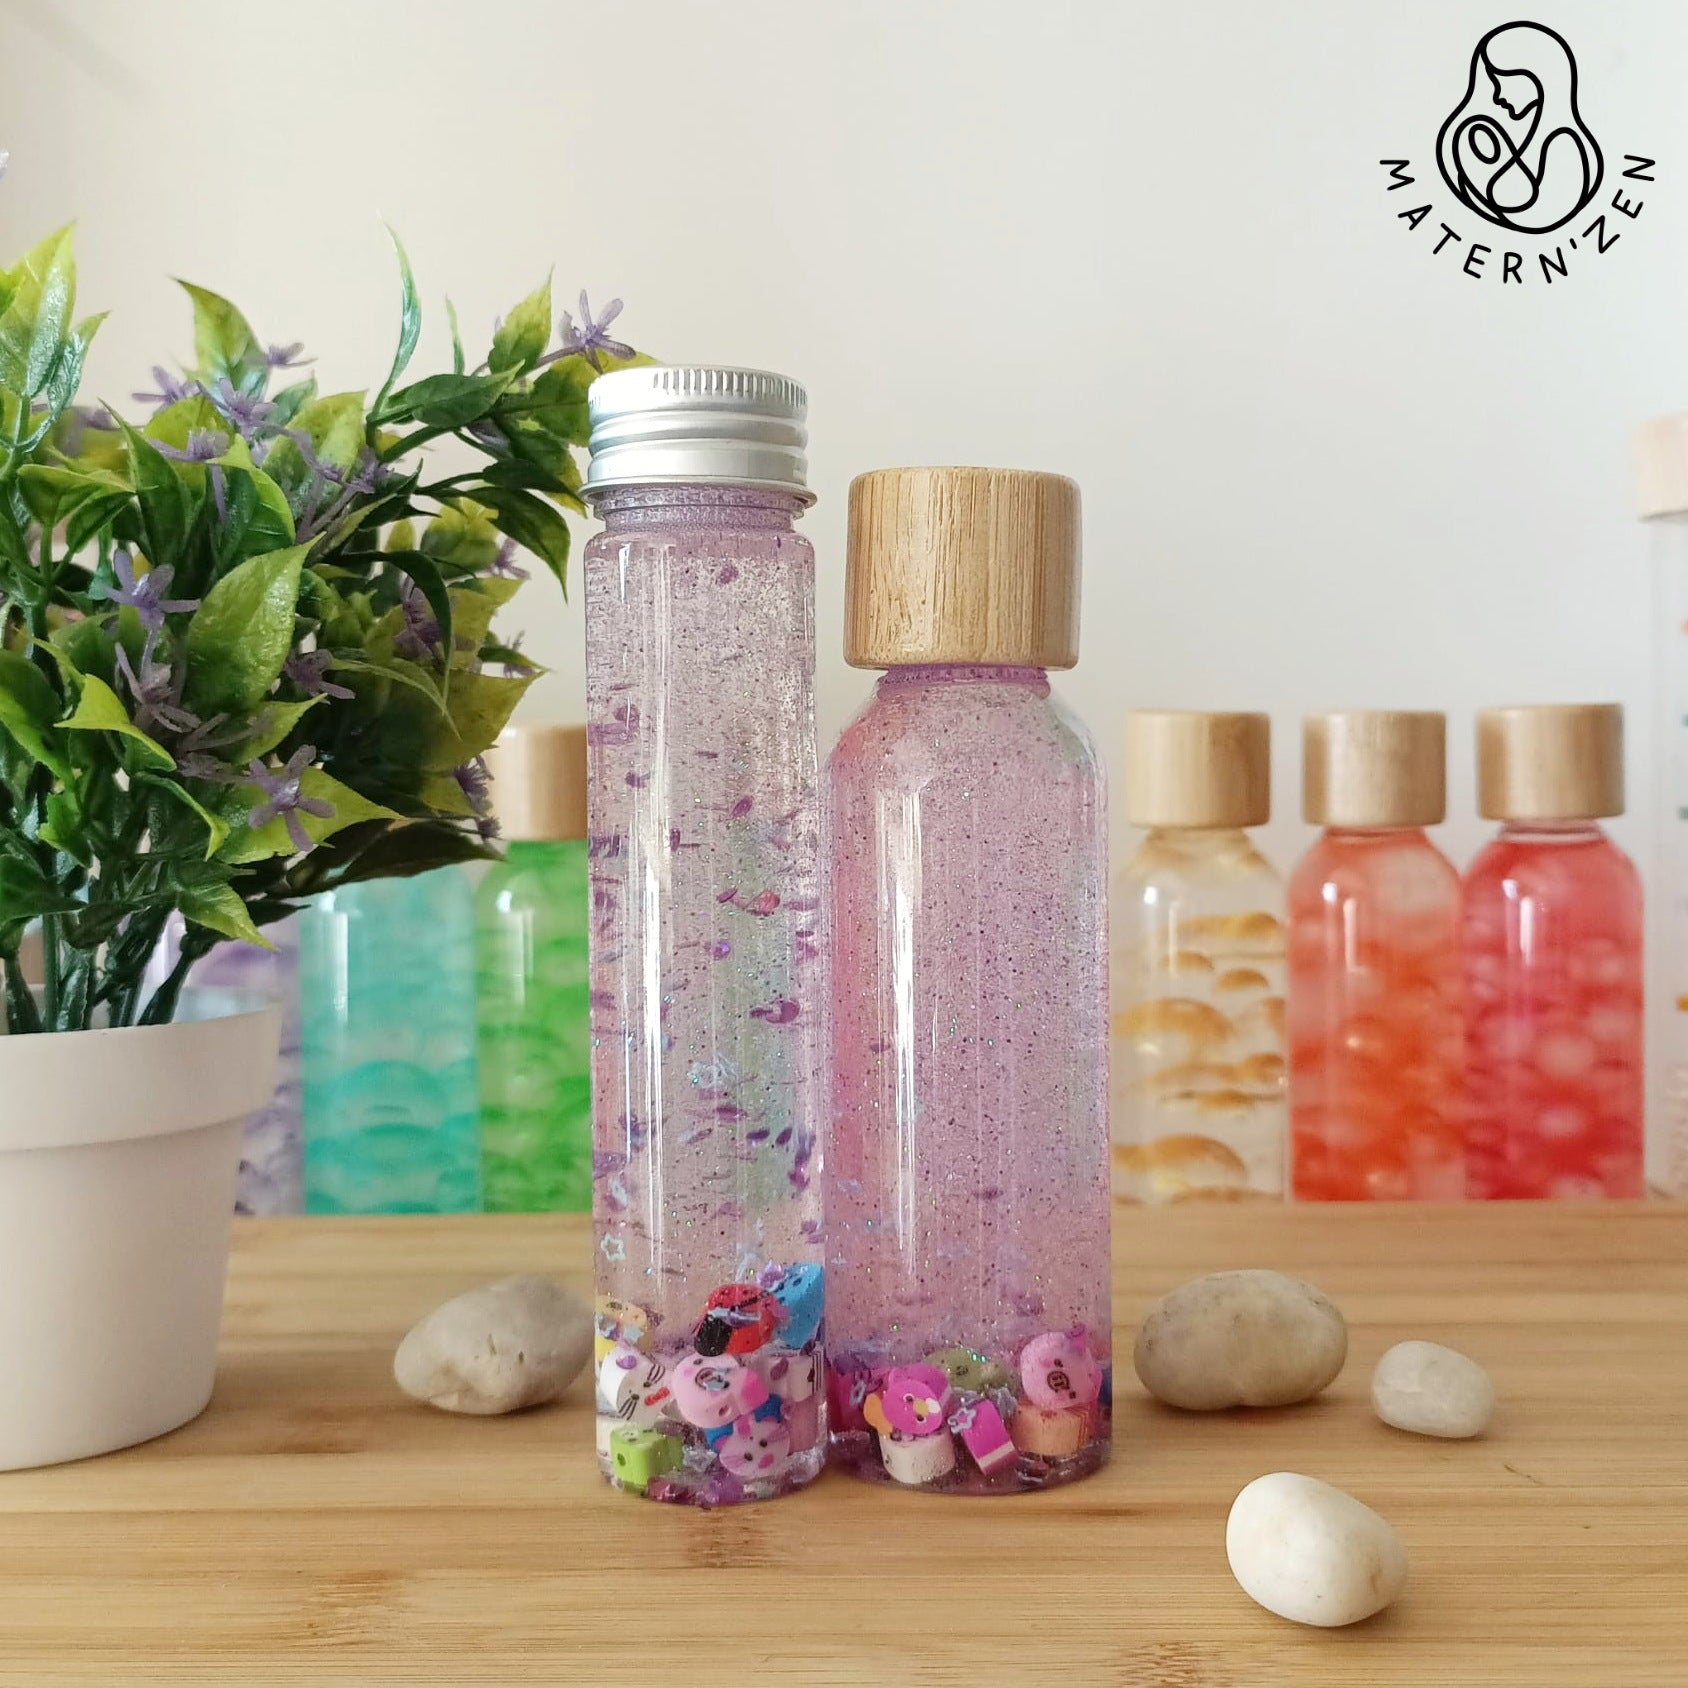 Acheter bouteille sensorielle liquide Montessori Animaux Kawaii. Le jouet ludique pour le retour au calme et l'observation des bébés et jeunes enfants. 